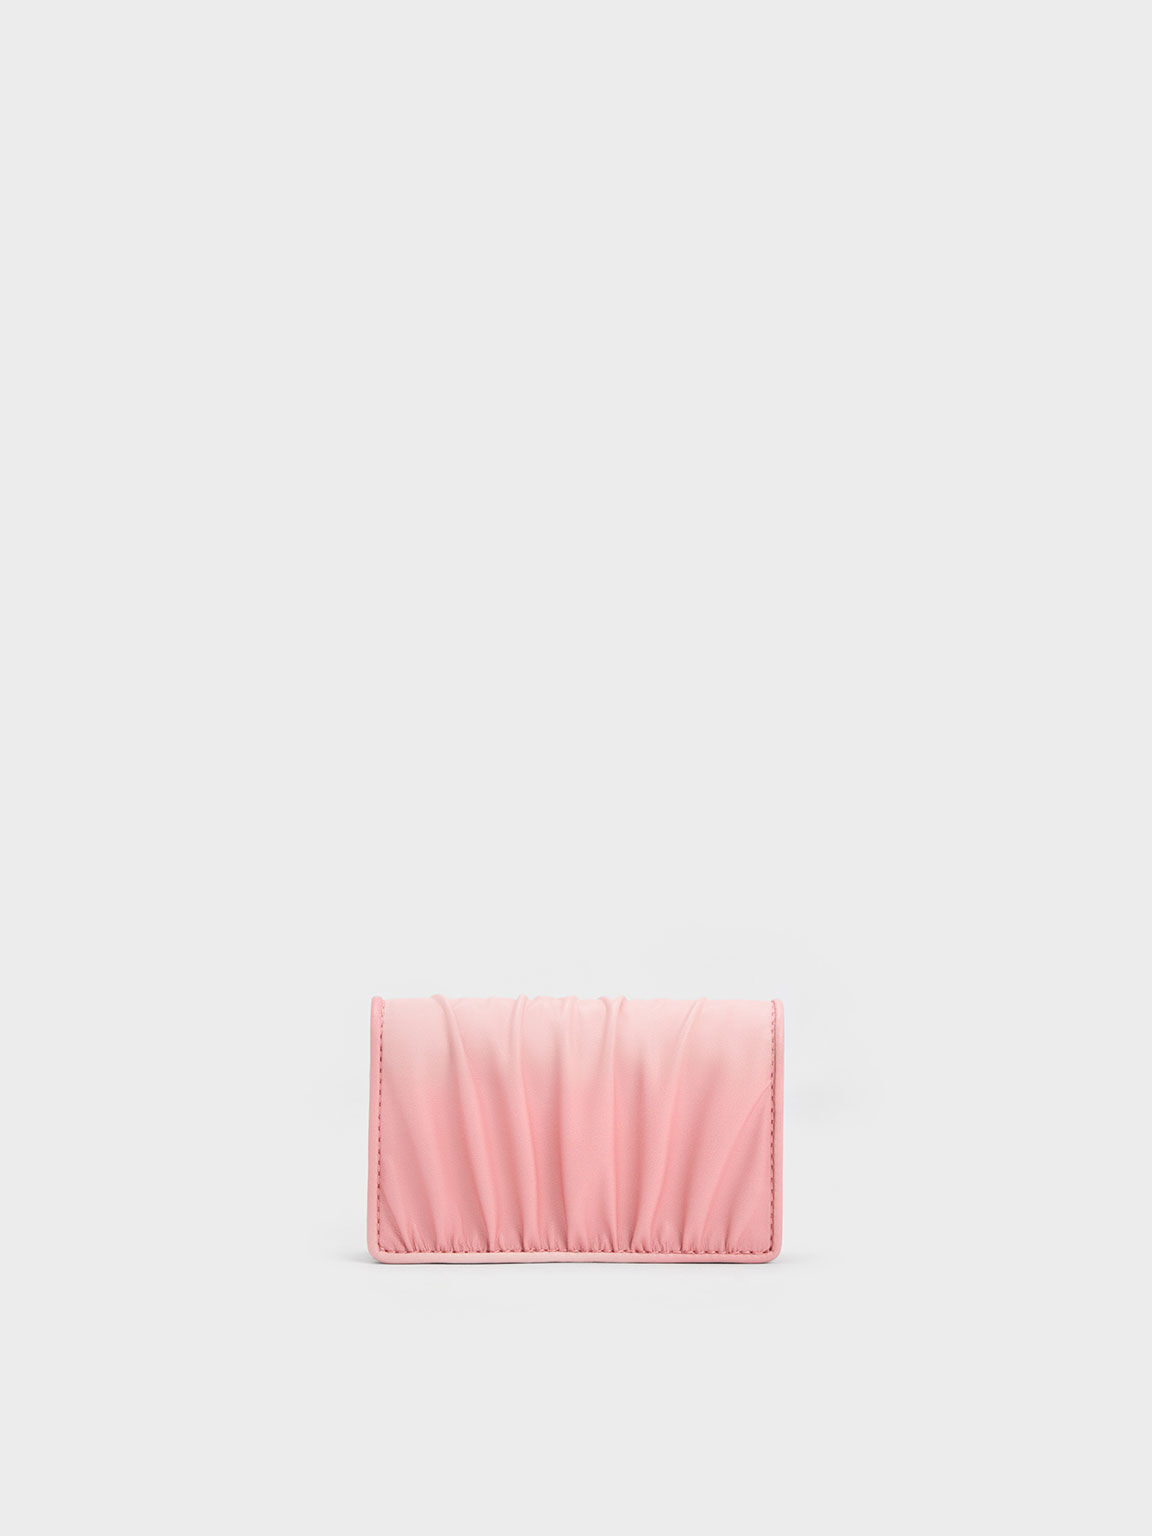 Aldora Ruched Cardholder, Light Pink, hi-res